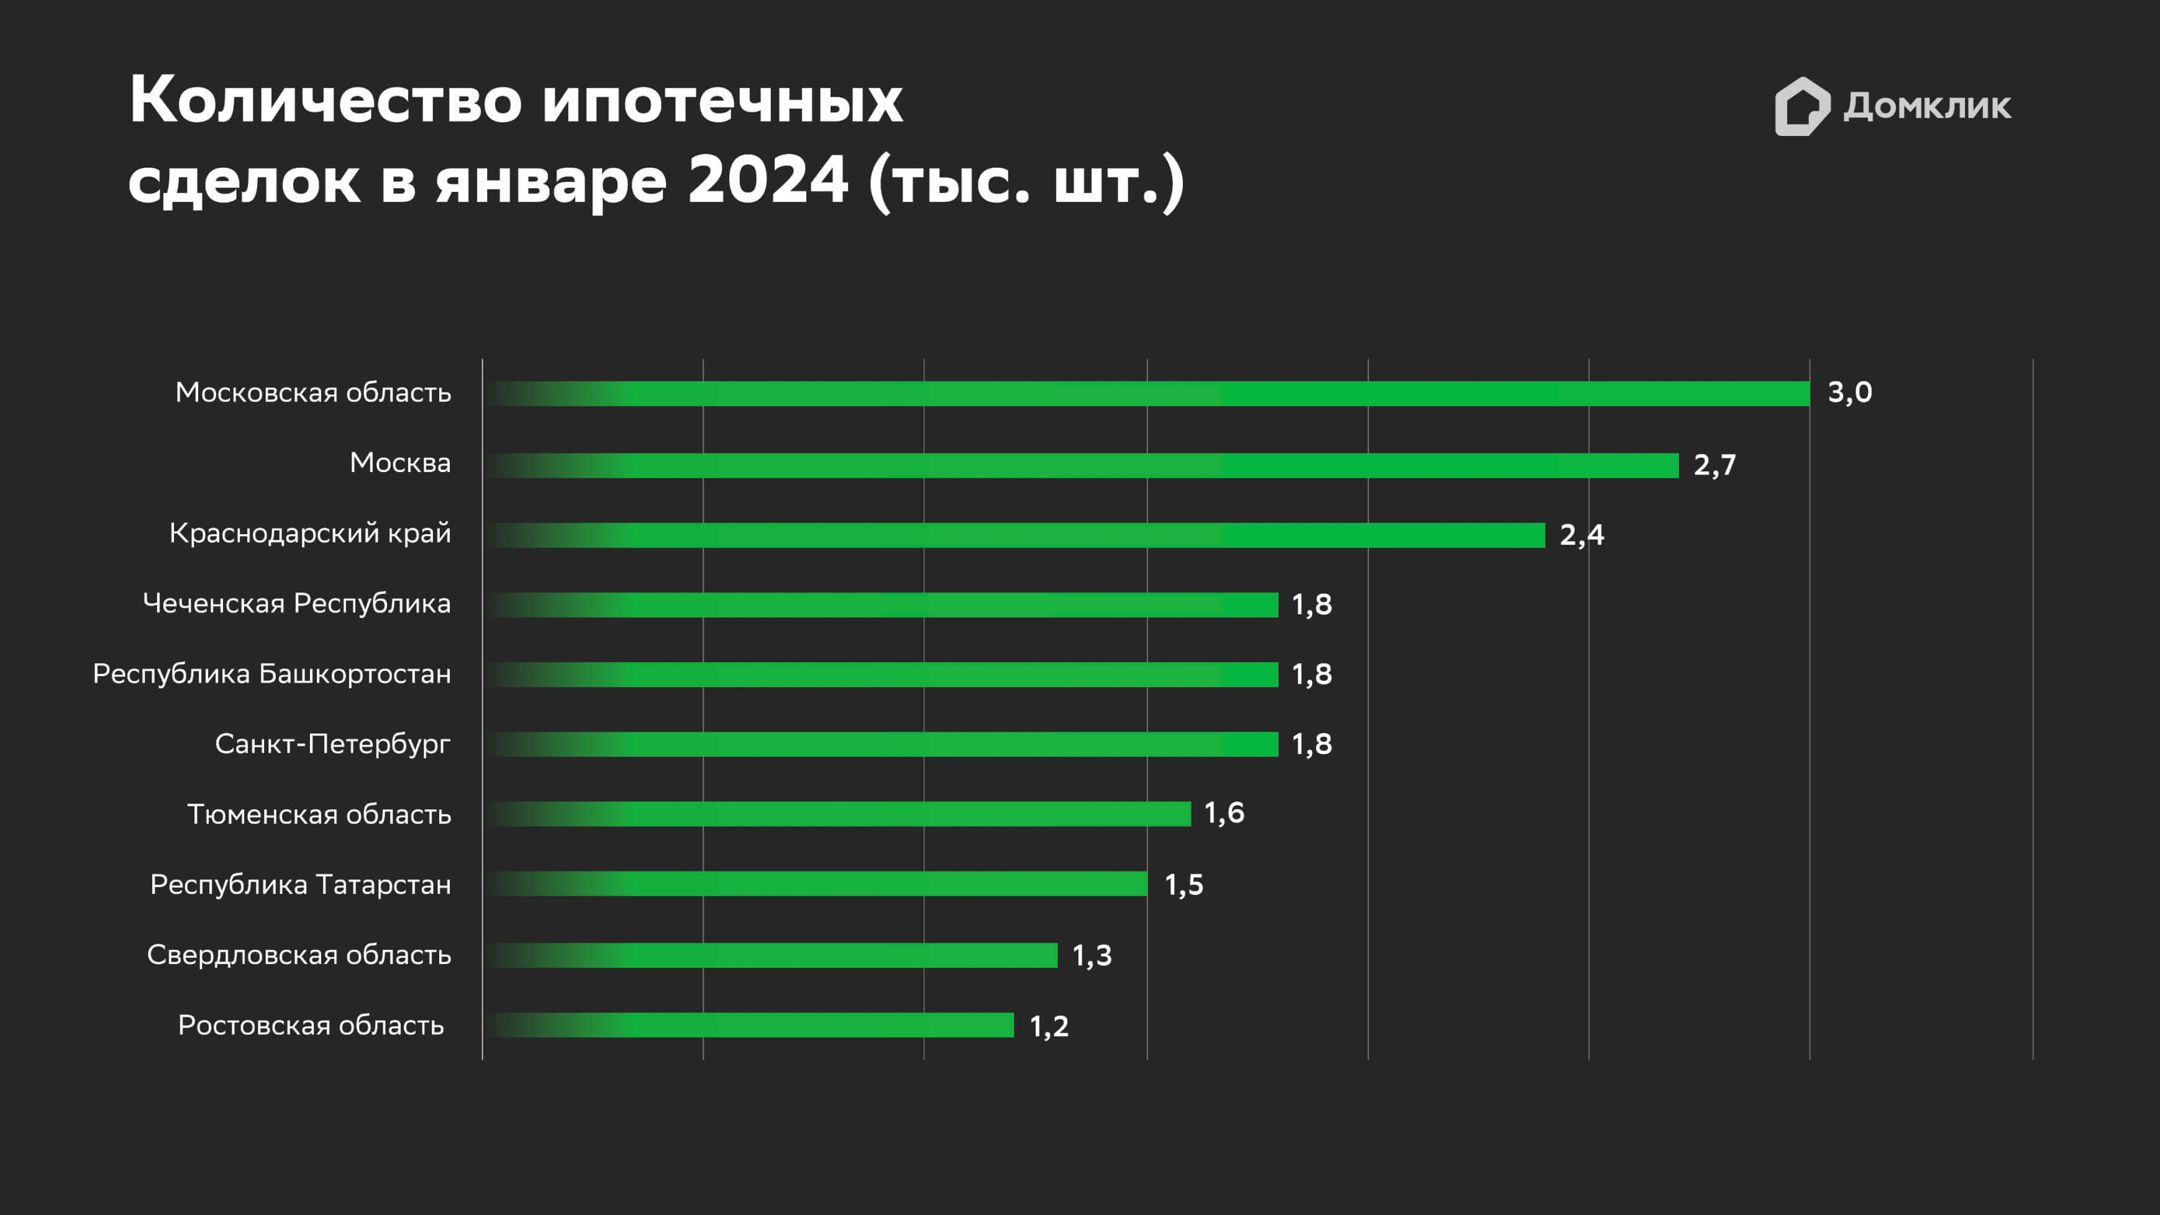 Топ-10 регионов РФ по количеству ипотечных сделок Сбера в январе 2024 года. Данные Сбера